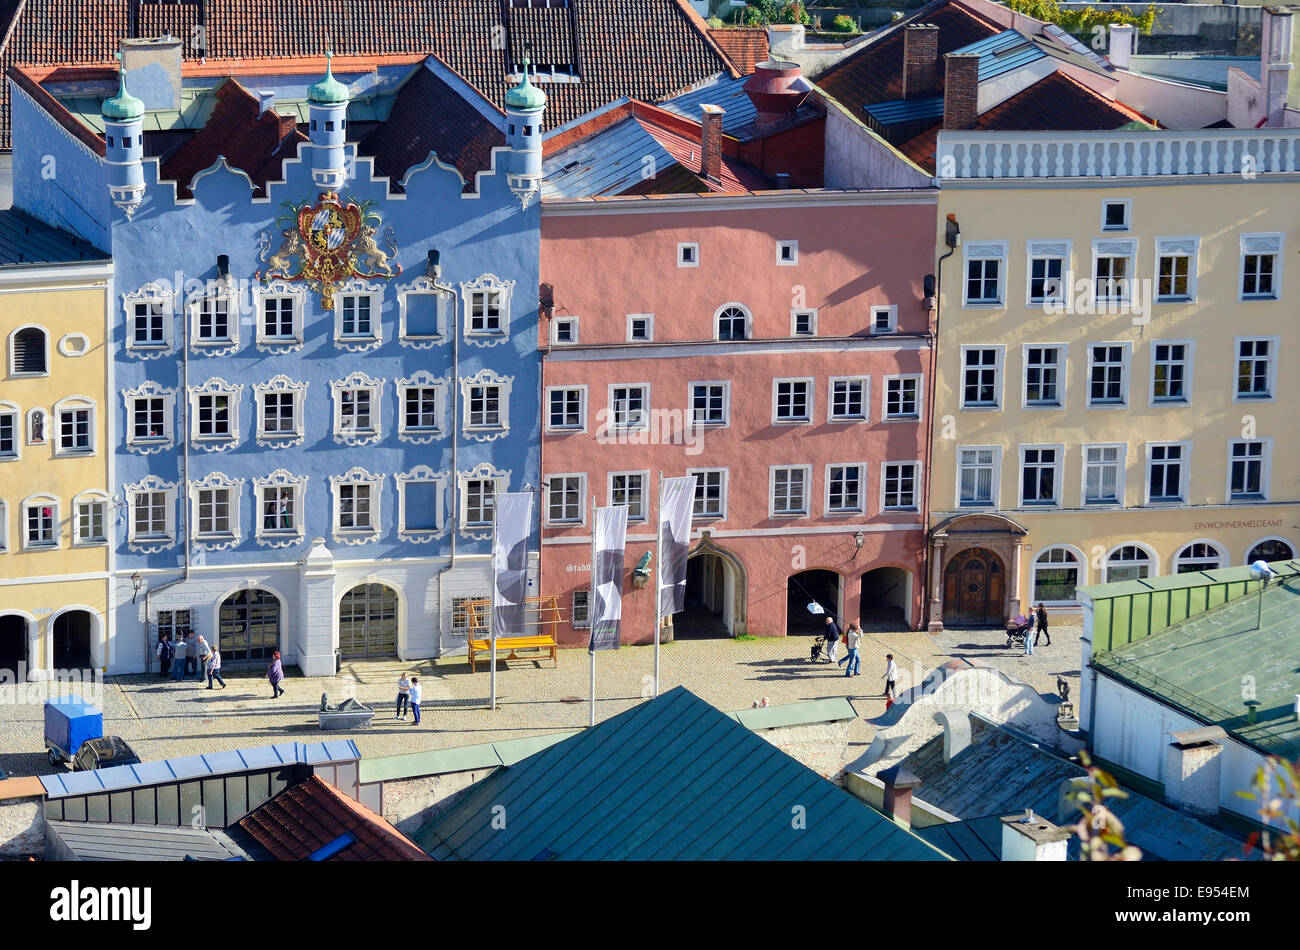 Bunte Fassaden, typischen Inn-Salzach-Architektur, Altstadt, Burghausen, Upper Bavaria, Bavaria, Germany Stockfoto